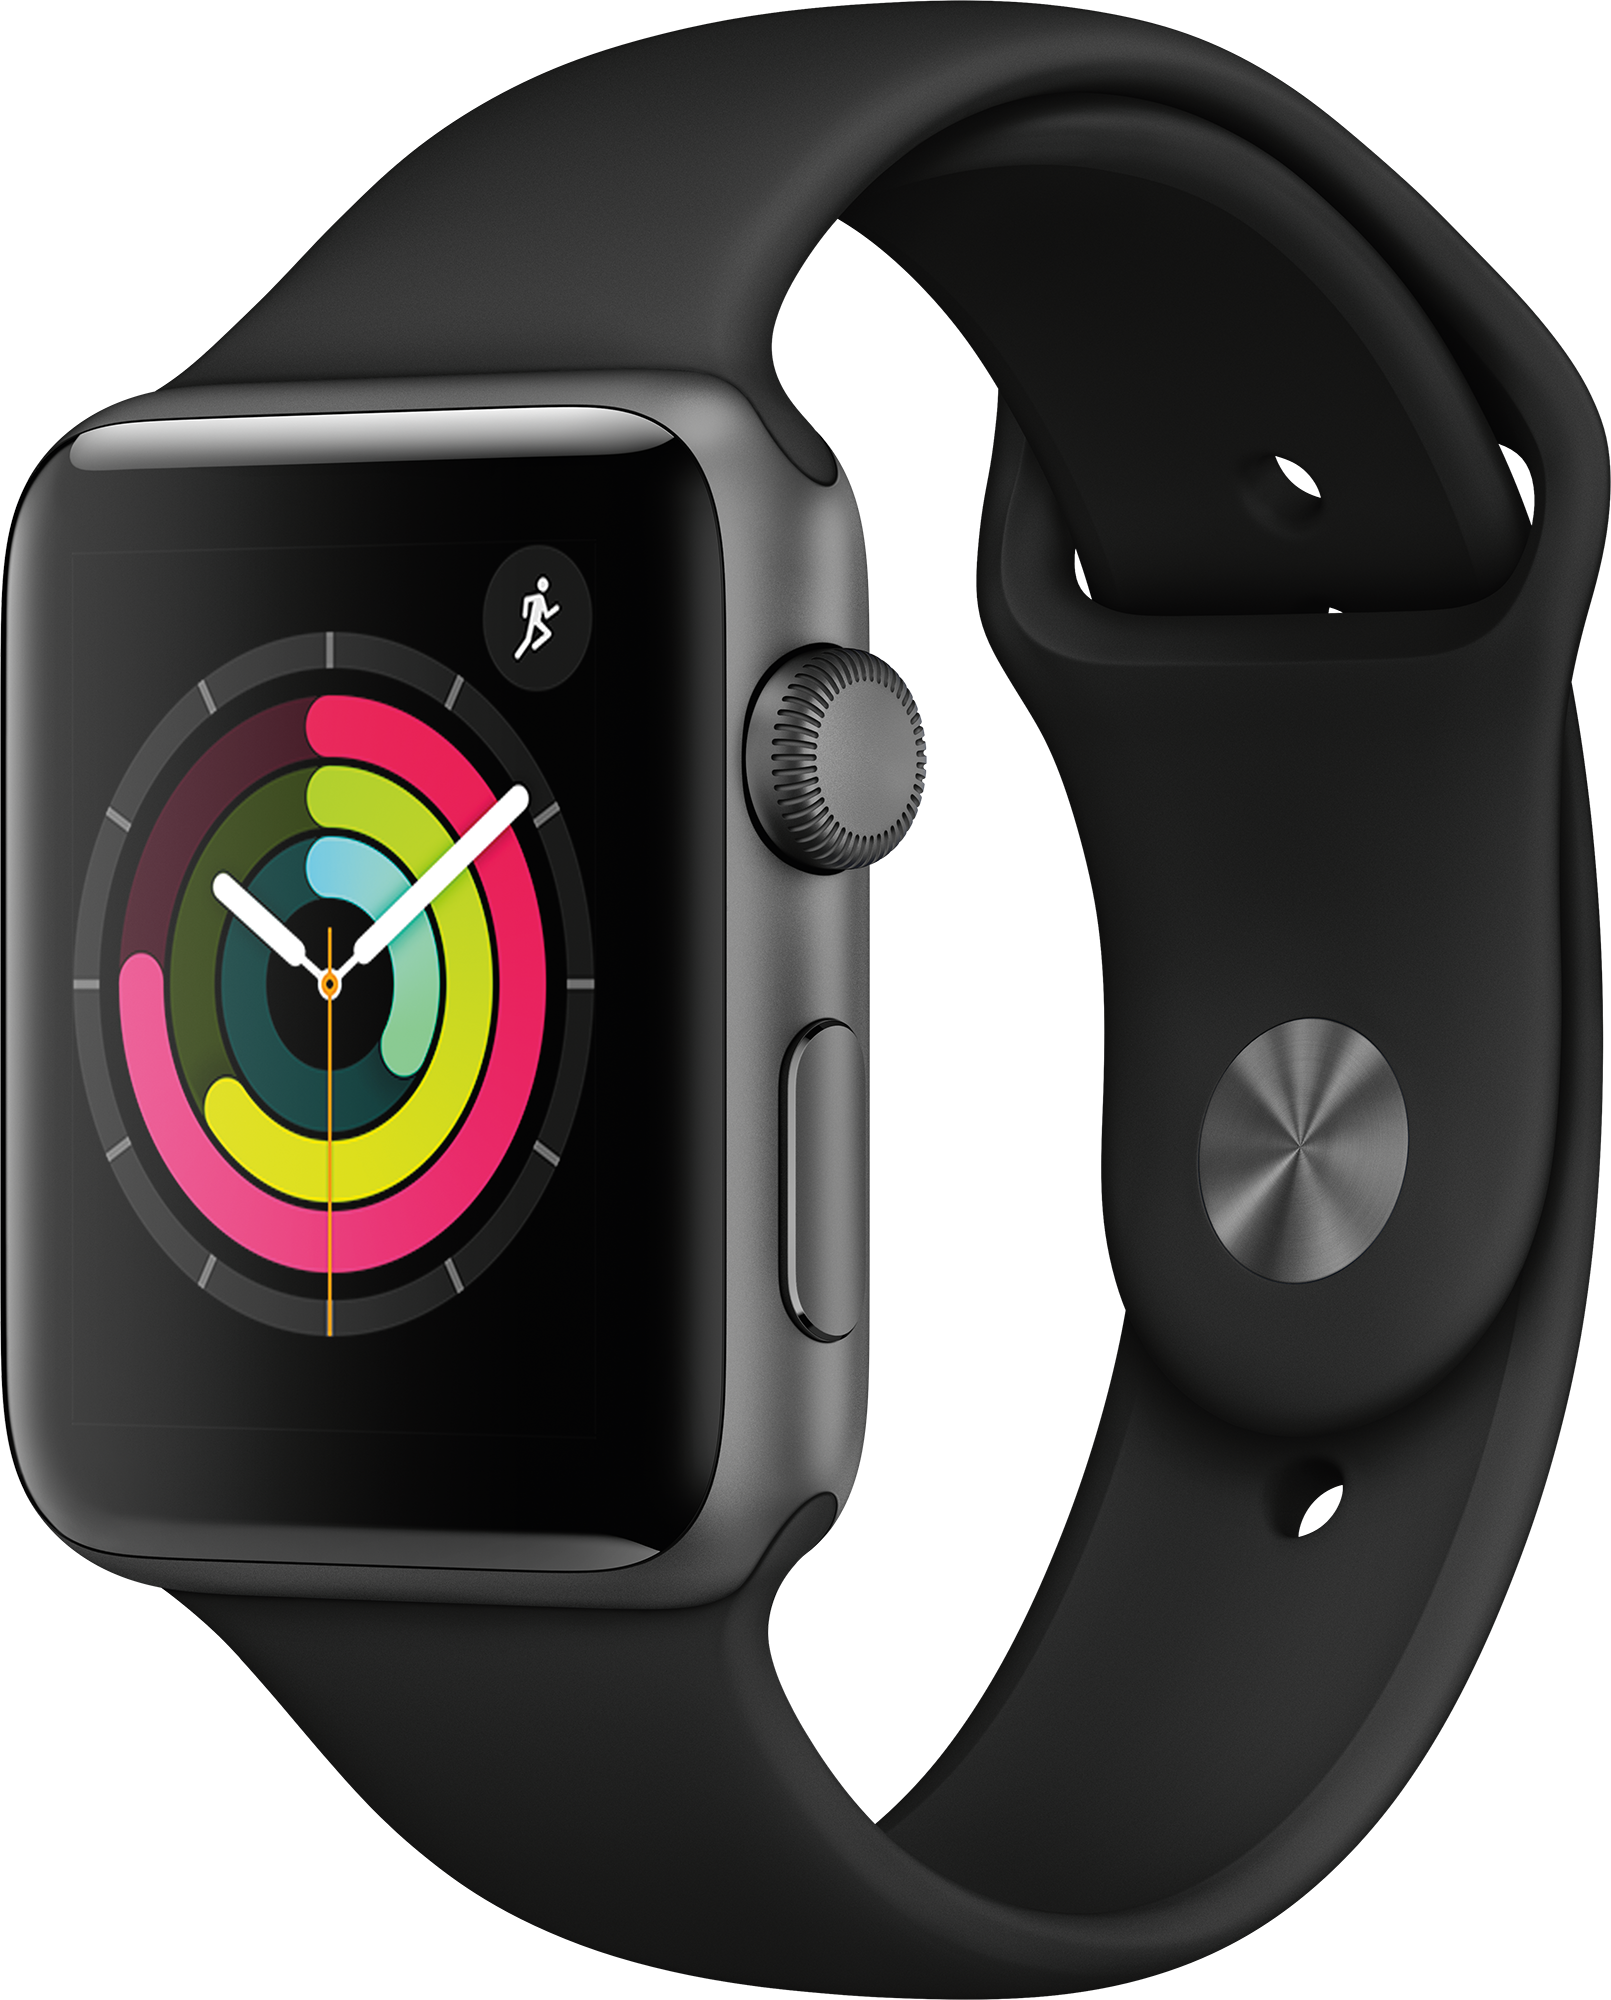 Aanbieding Apple Watch Series 3 42mm Spacegrijs Aluminium / Zwart Sportbandje - 0190198807021